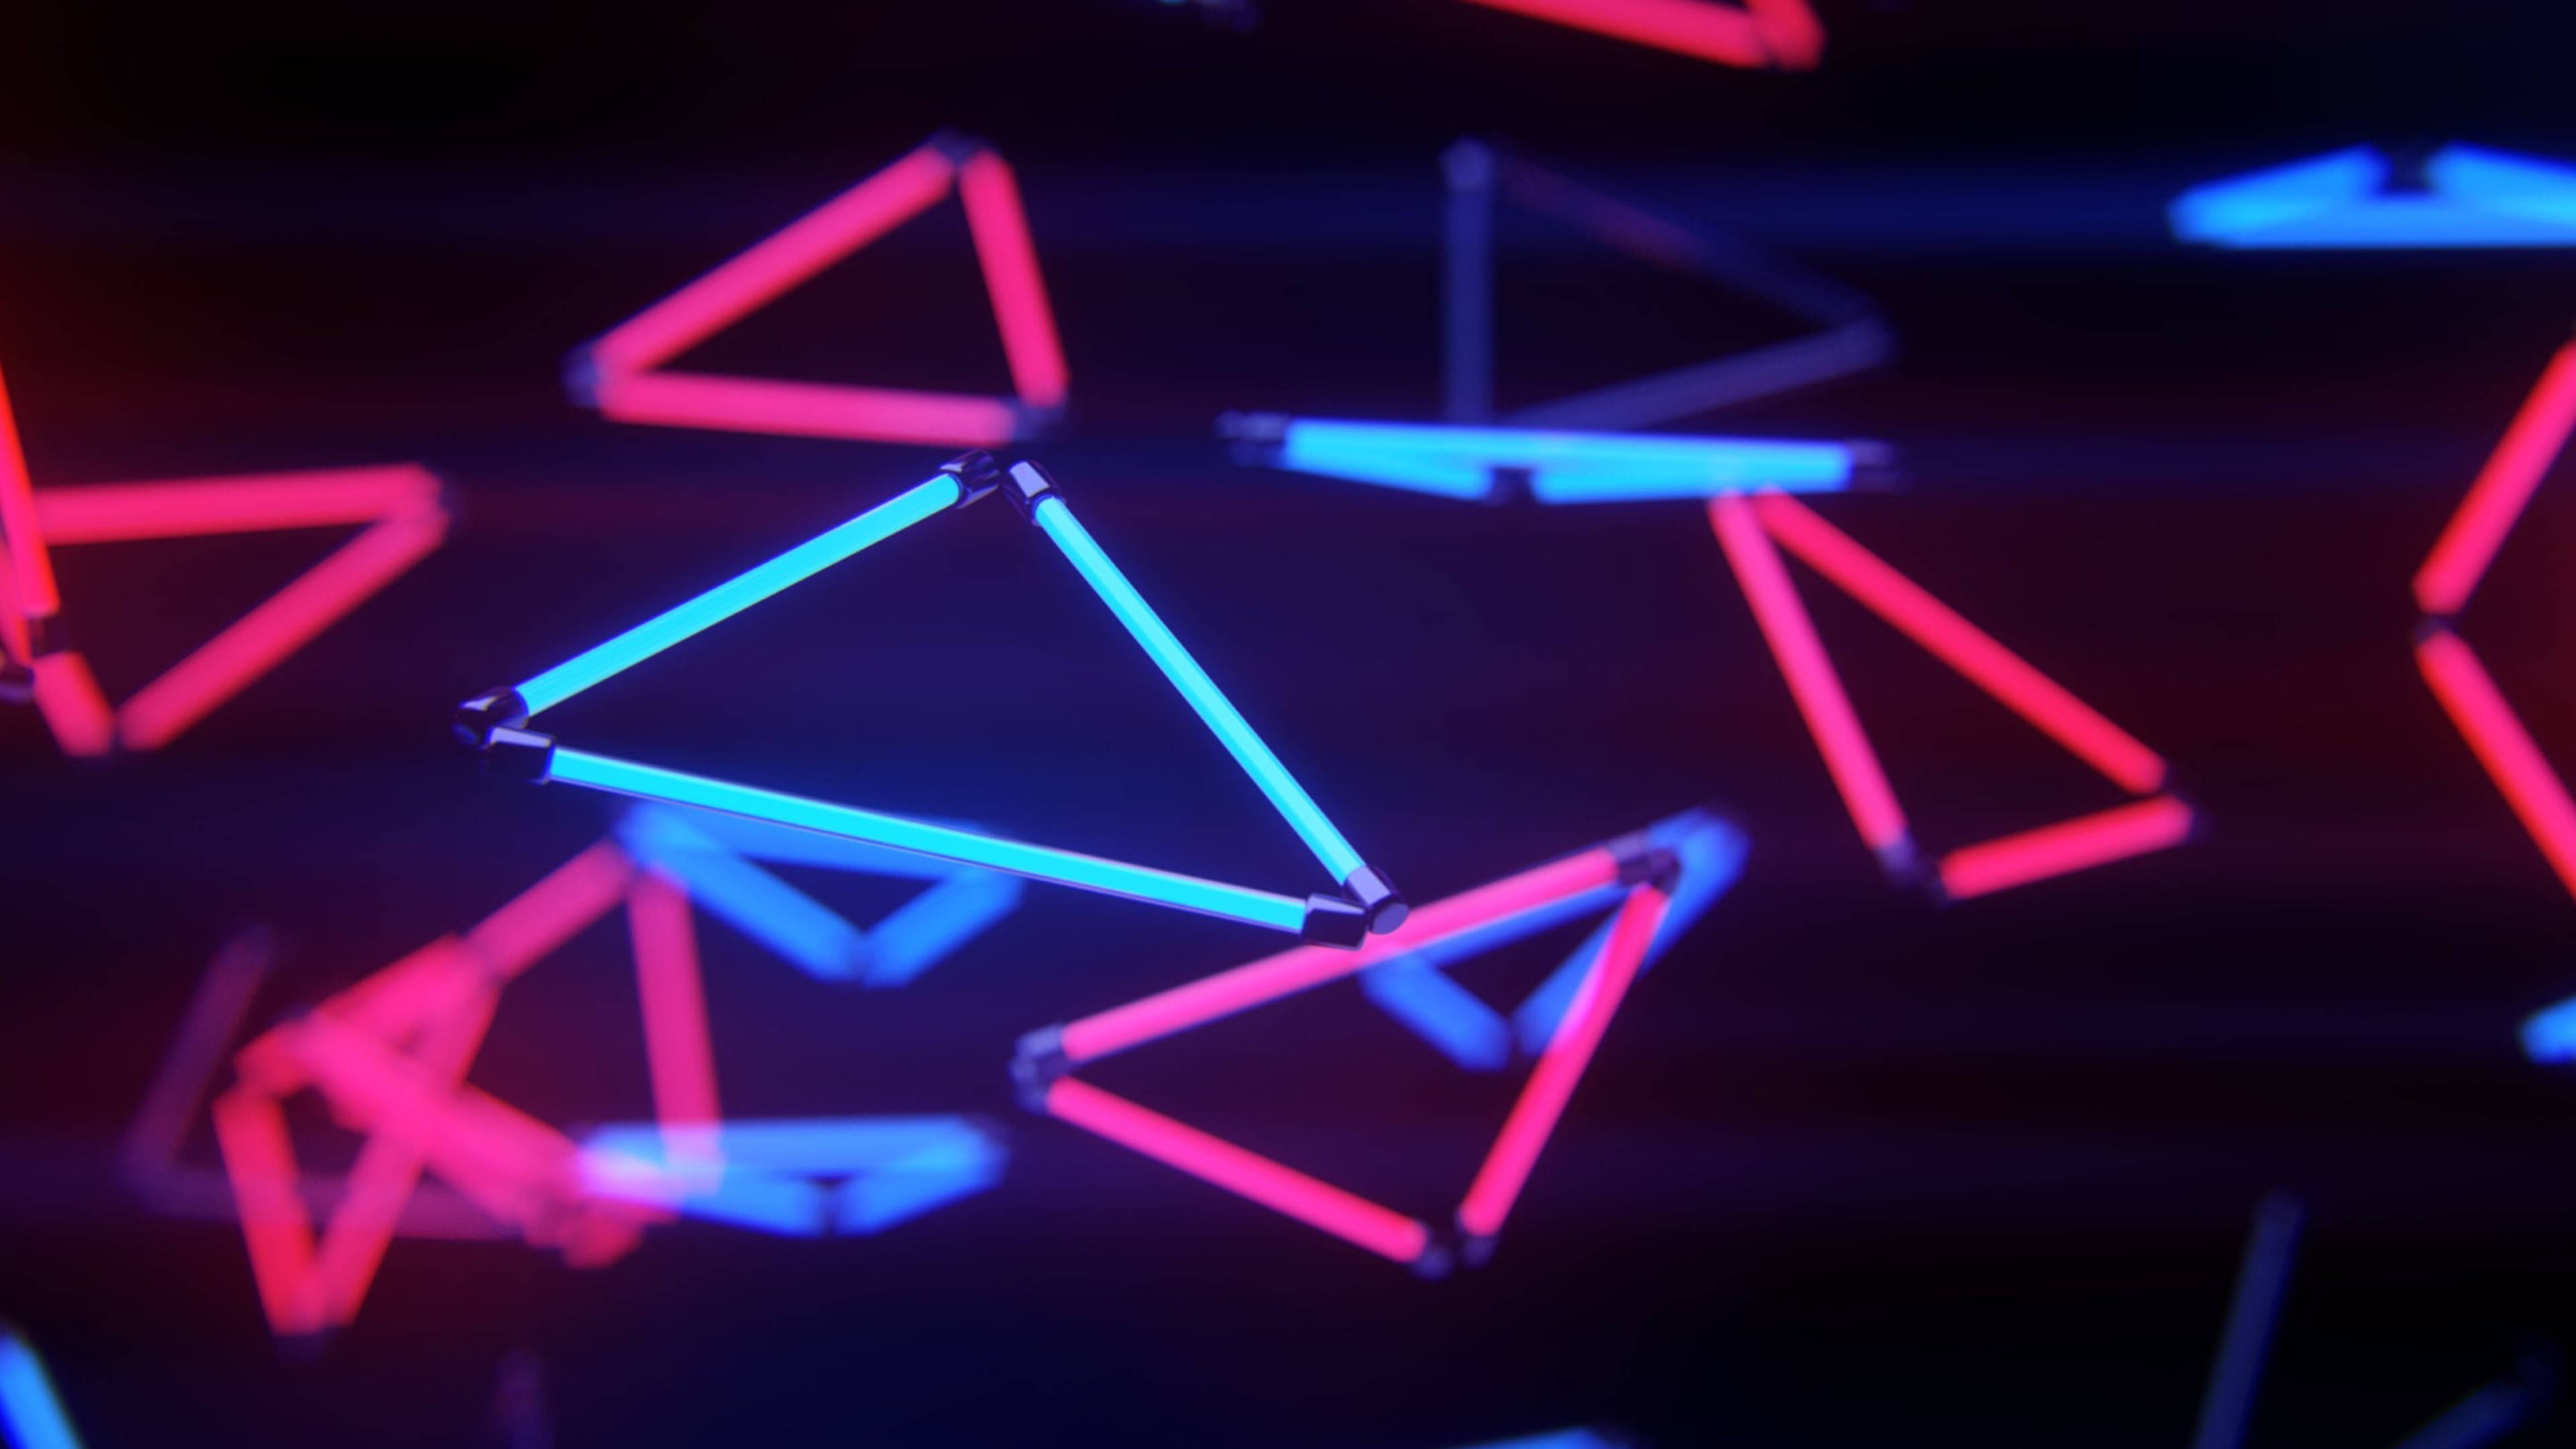 Neon, LED-Dreieck. Hintergrund, Hintergrundbild für Mobiltelefone